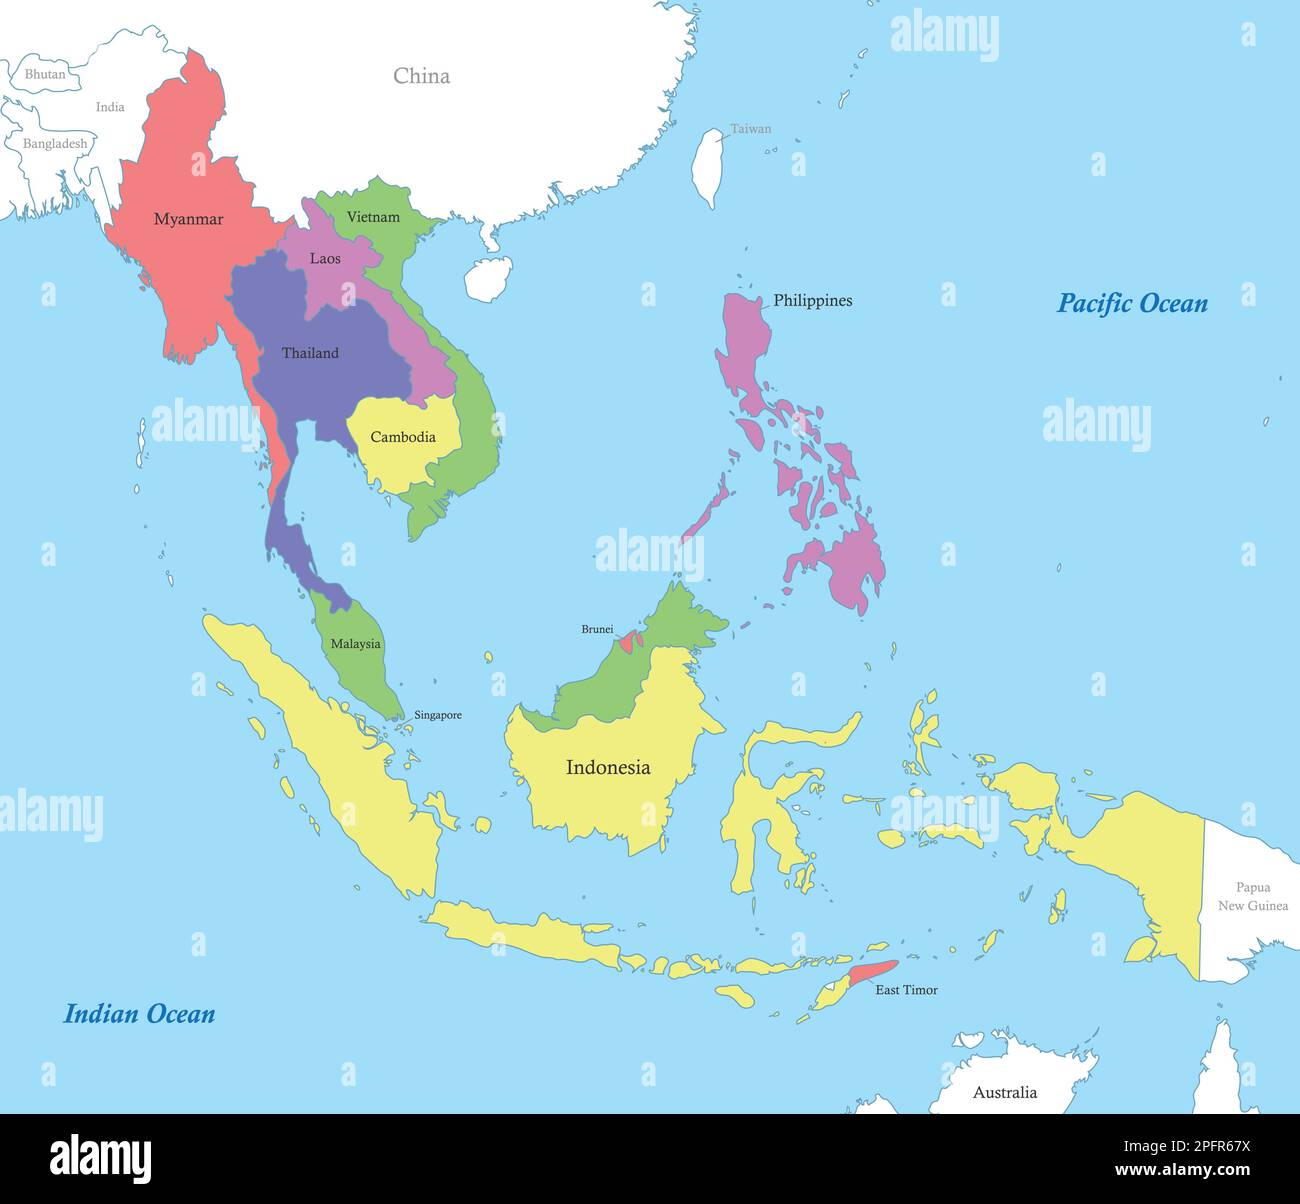 Mappa a colori politica dell'Asia sudorientale con i confini degli stati. Illustrazione Vettoriale